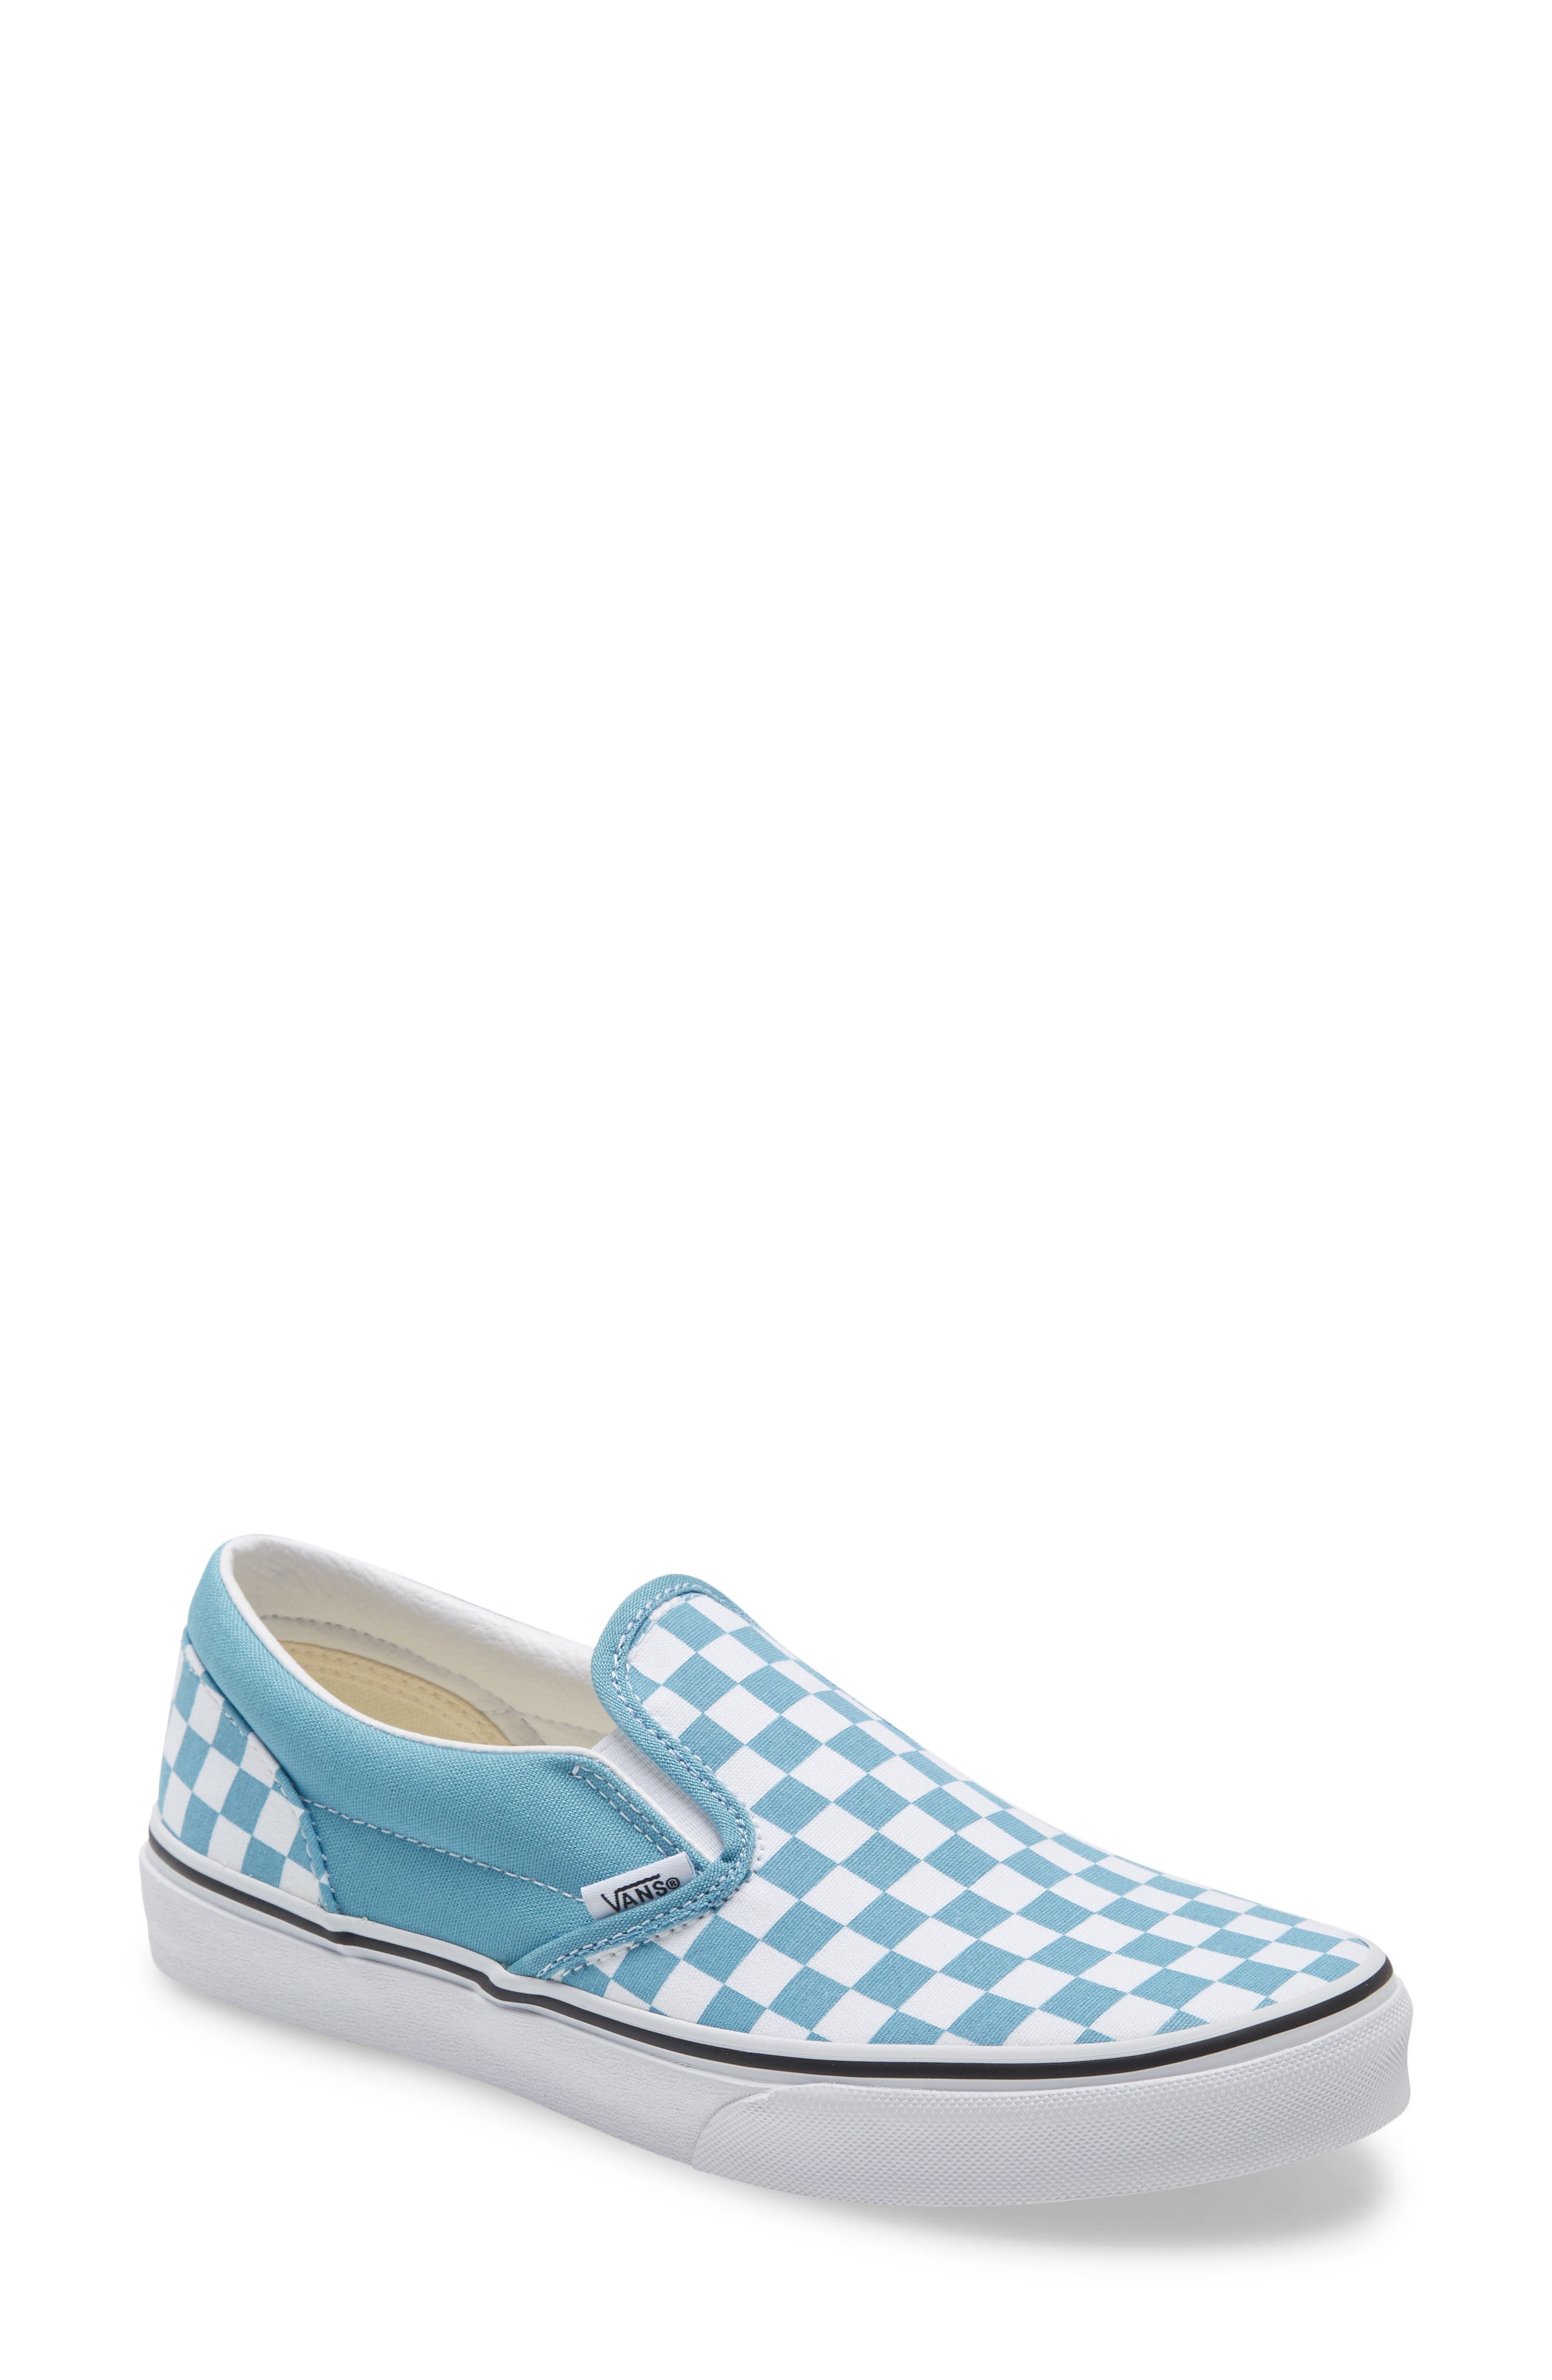 vans shoes for girl blue